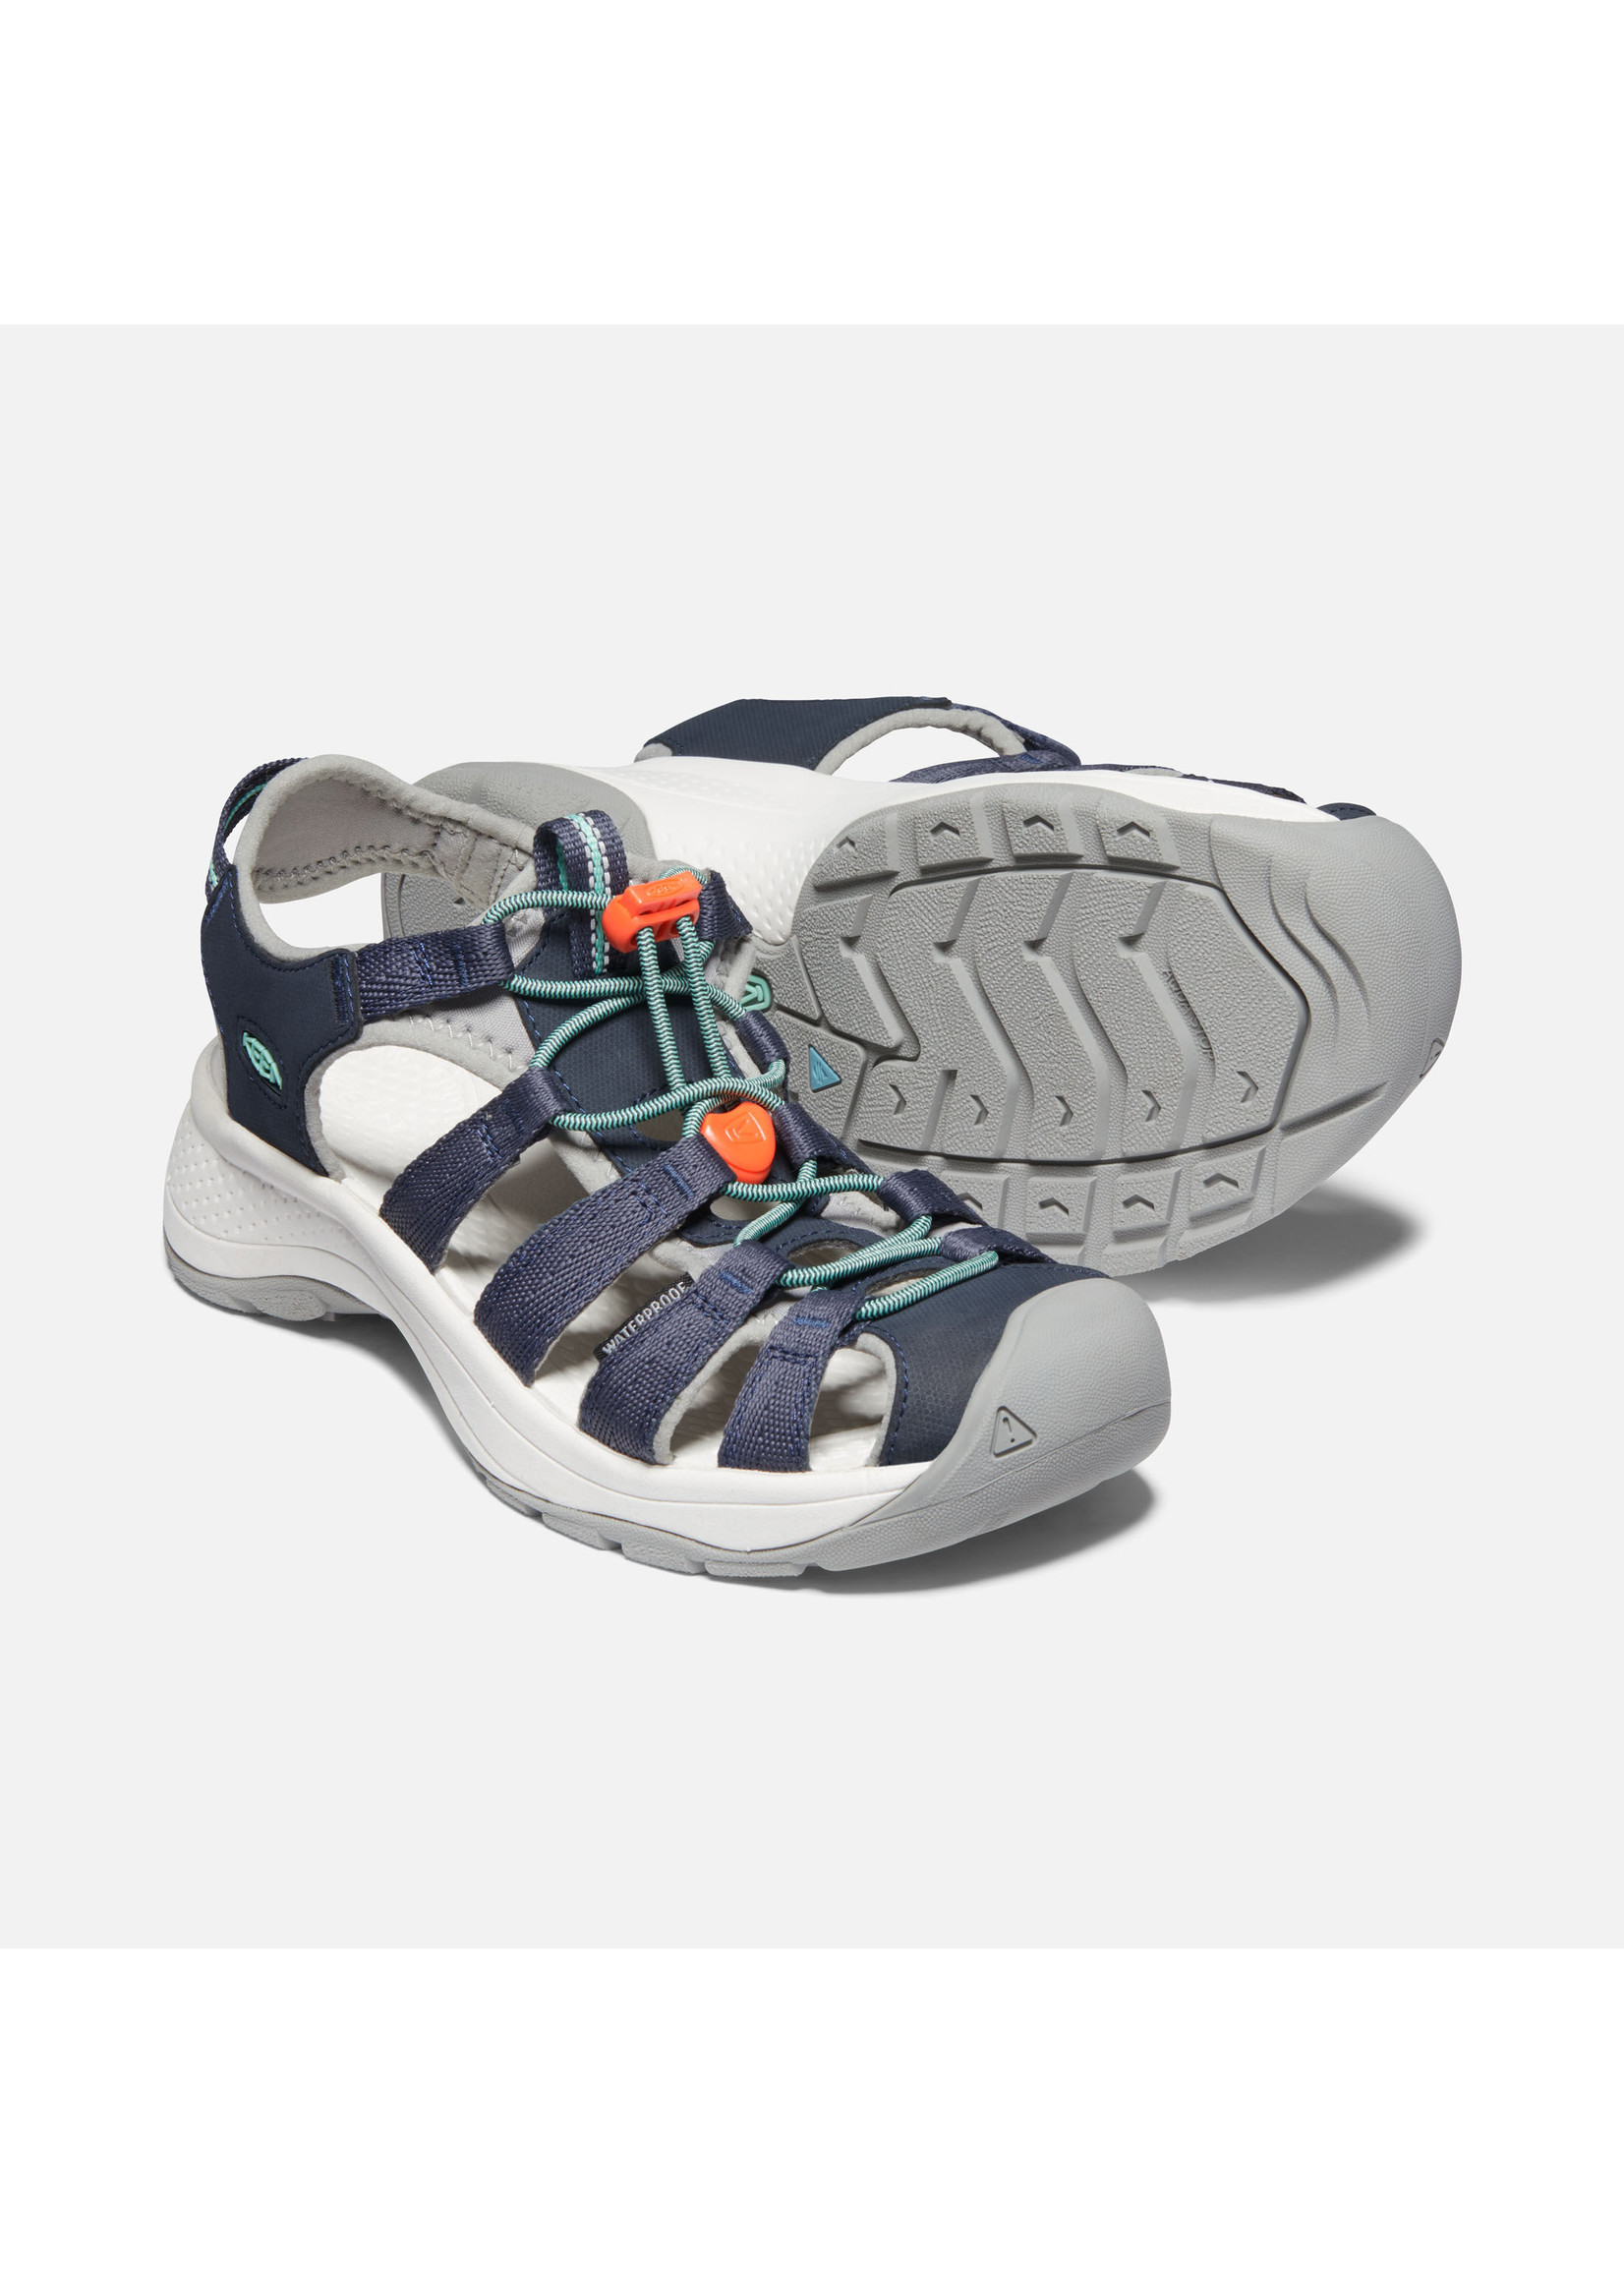 Keen Footwear Womens Astoria West Sandal Navy/Beveled Glass